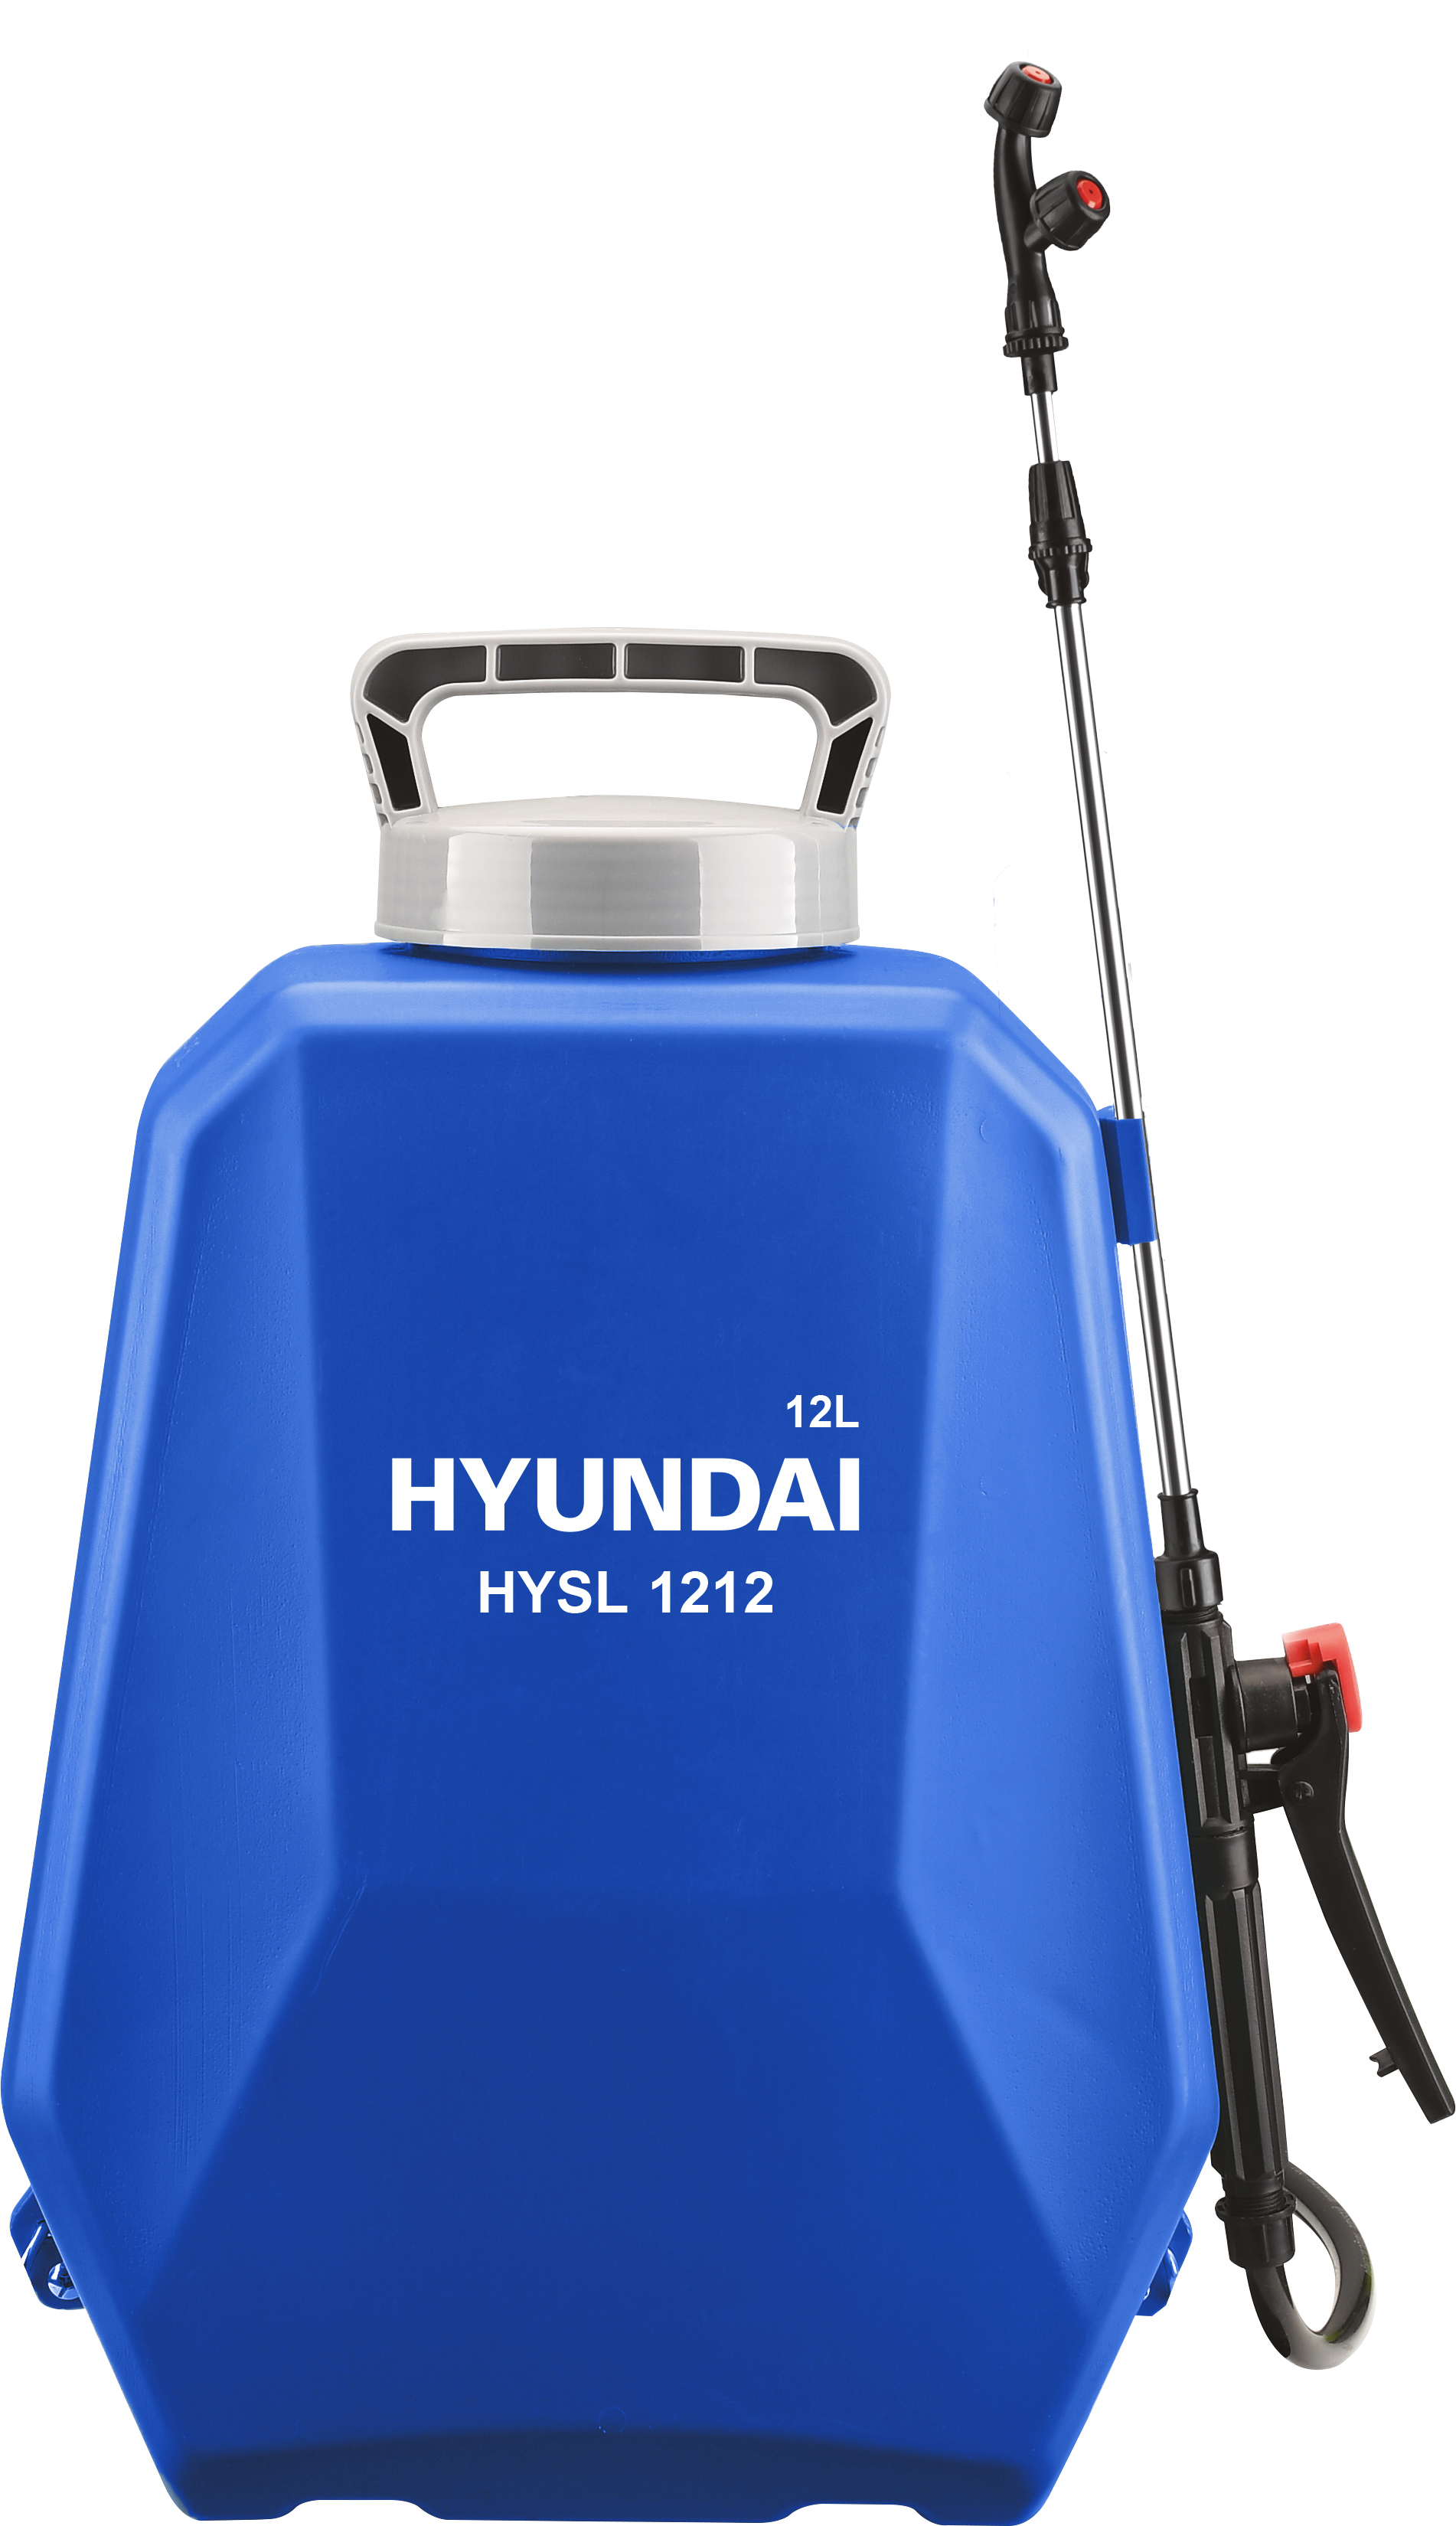 Аккумуляторный опрыскиватель Hyundai HYSL 1212 аккумуляторный опрыскиватель hyundai hysl 1212